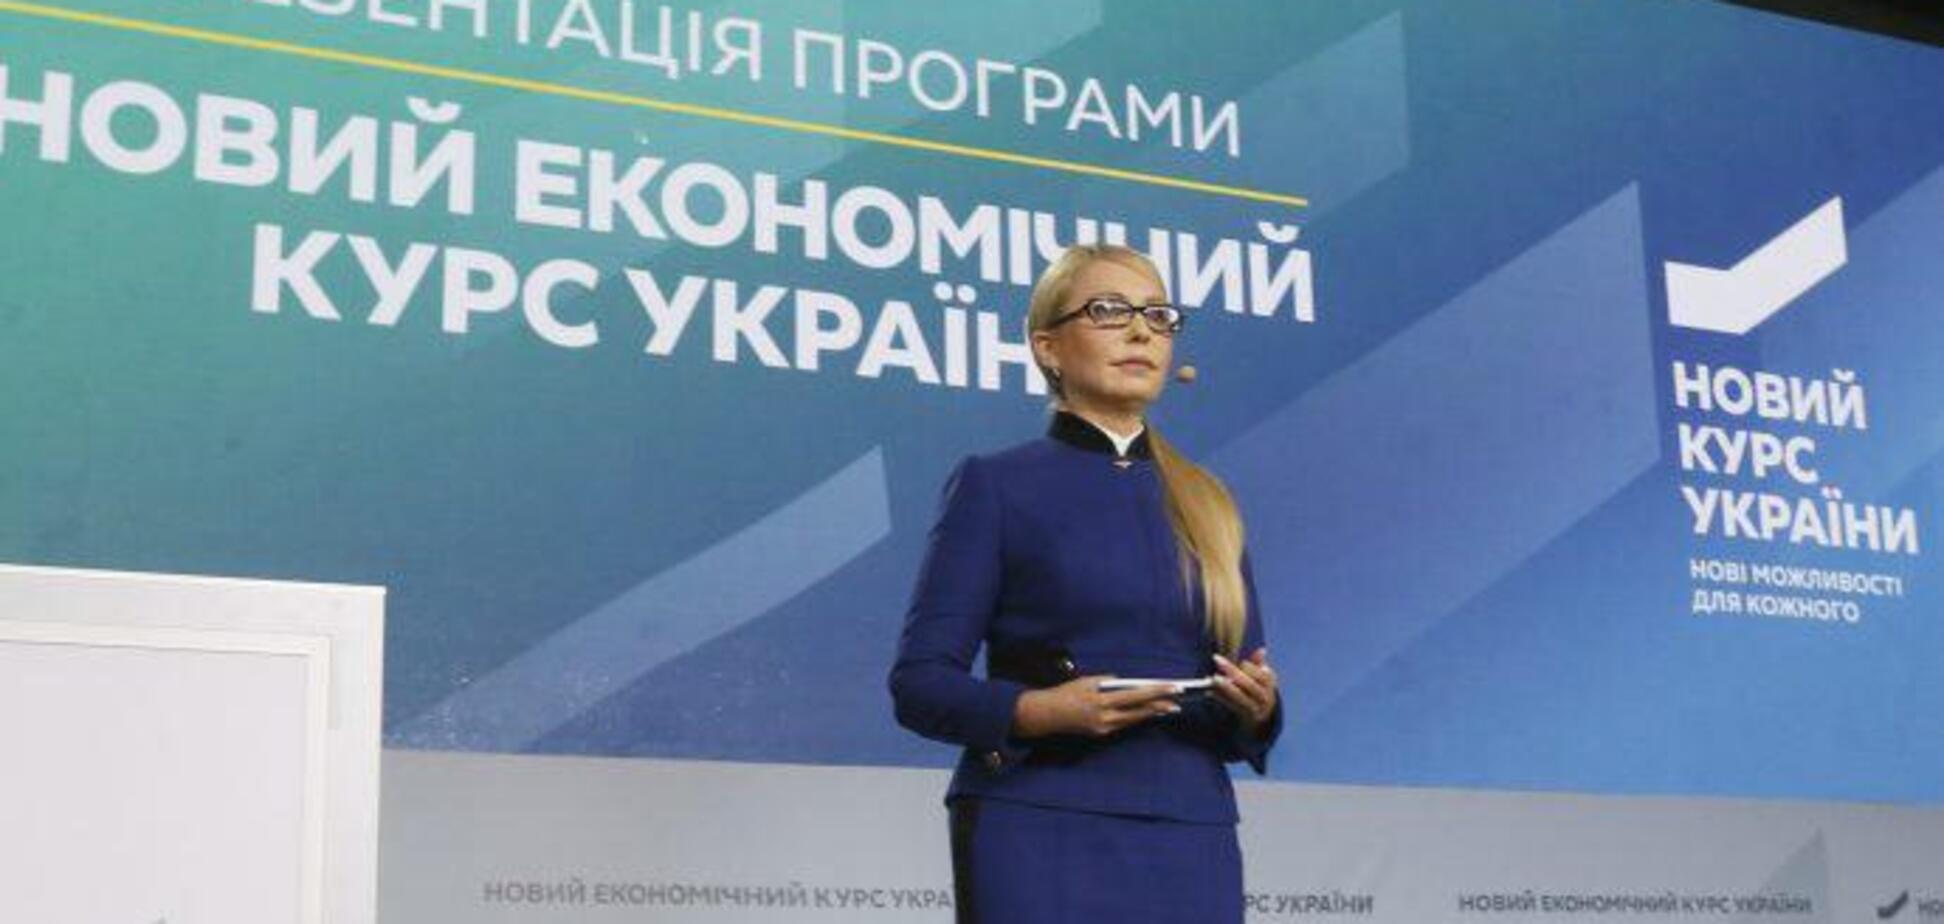 Тимошенко указала путь к экономическому успеху Украины